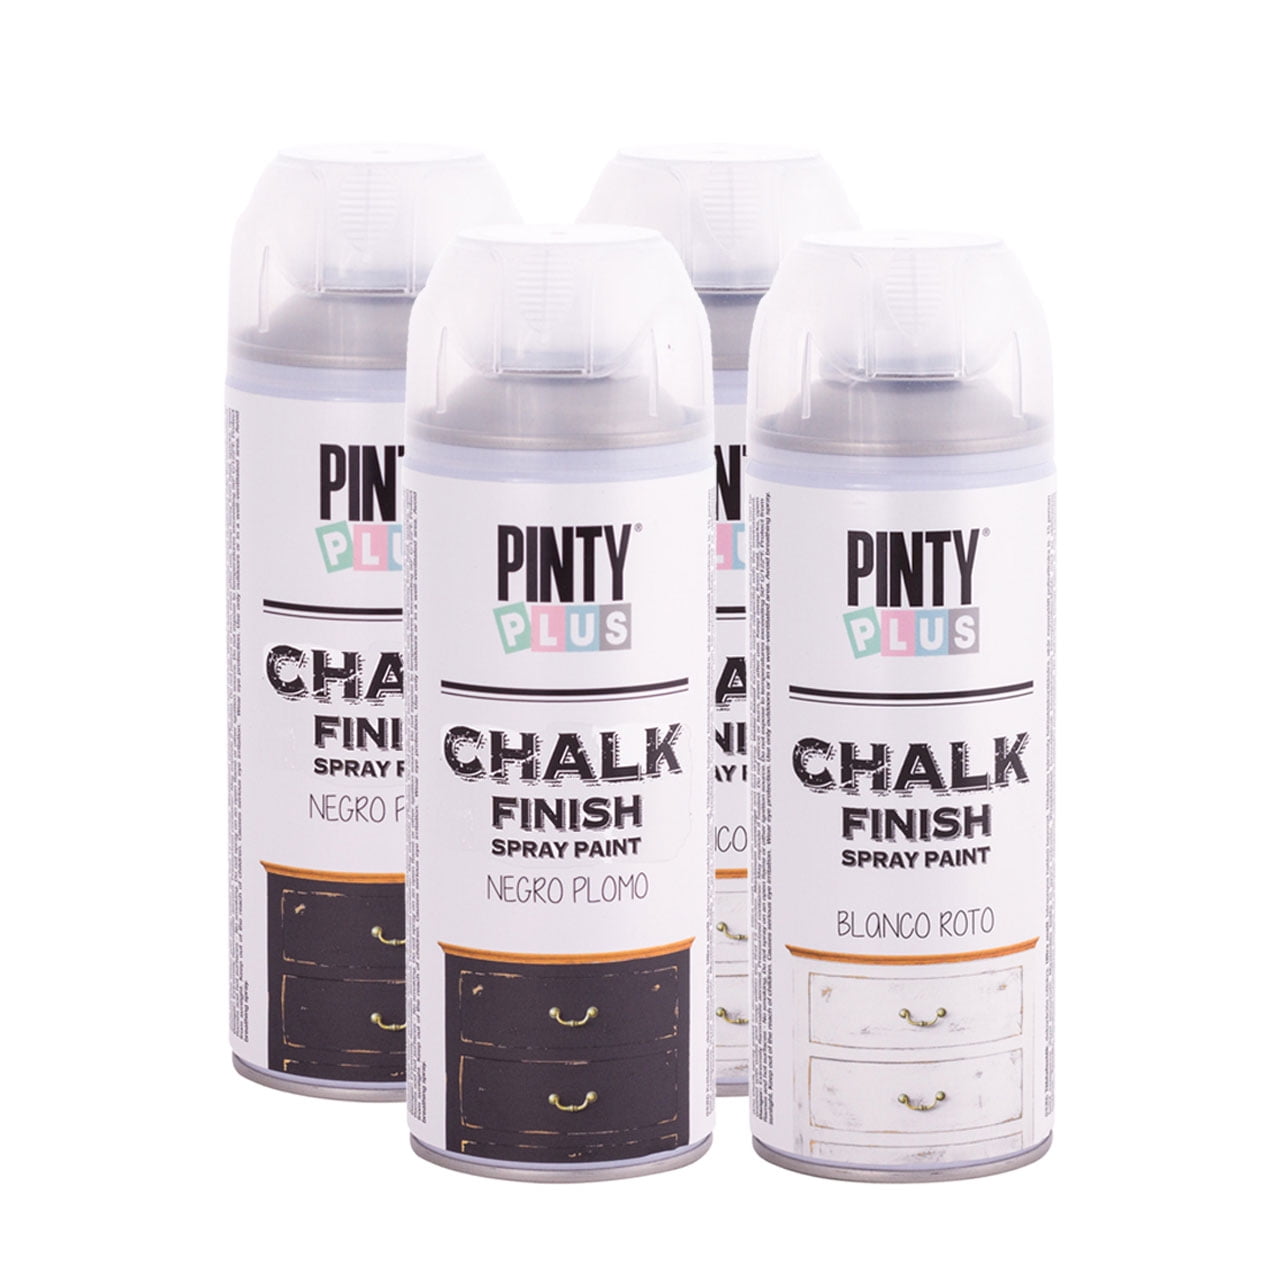 Pintura en spray efecto tiza vintage Pintyplus Chalk blanco roto